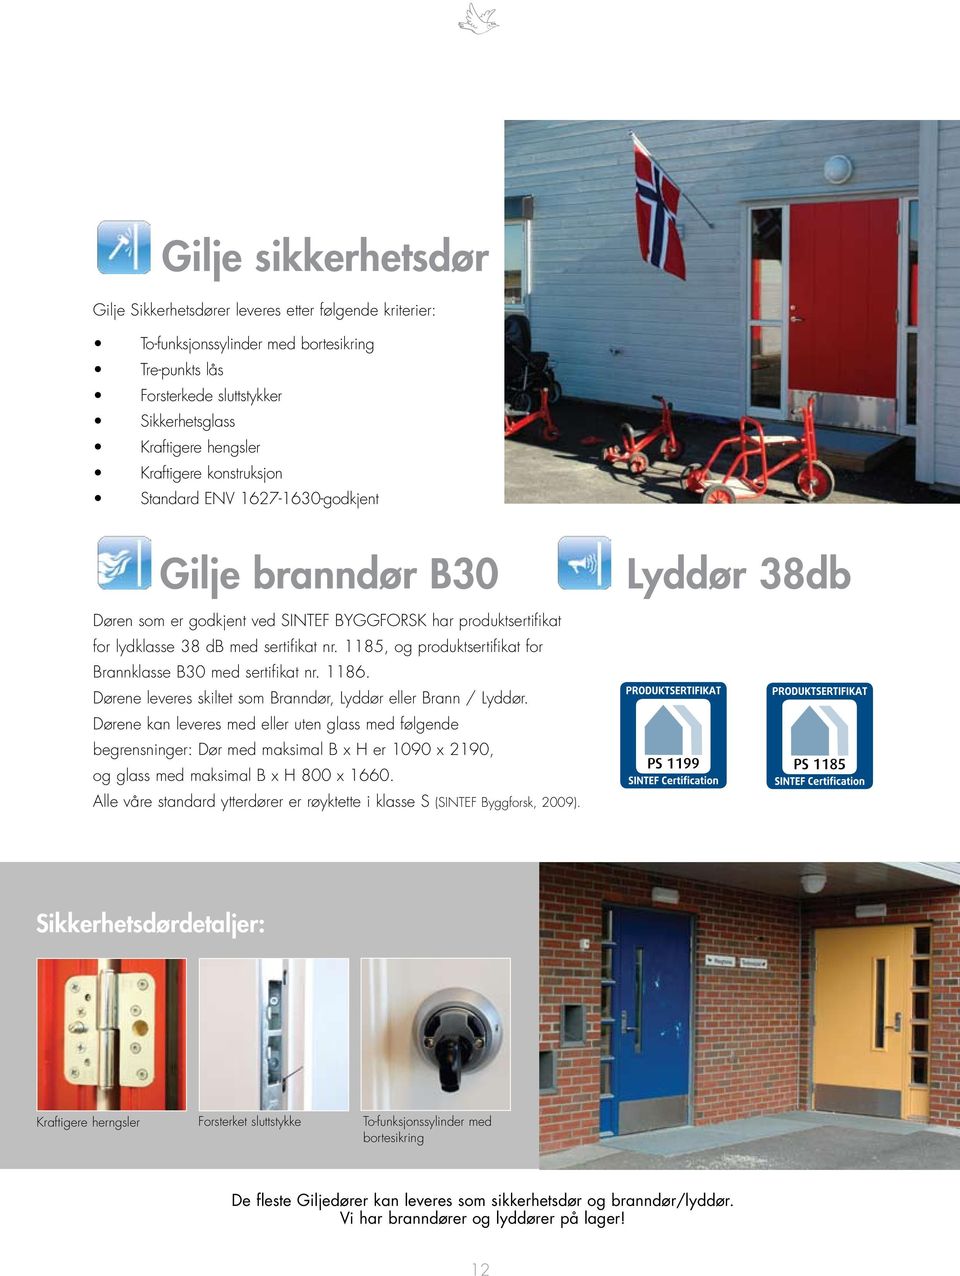 1185, og produktsertifikat for Brannklasse B30 med sertifikat nr. 1186. Dørene leveres skiltet som Branndør, Lyddør eller Brann / Lyddør.